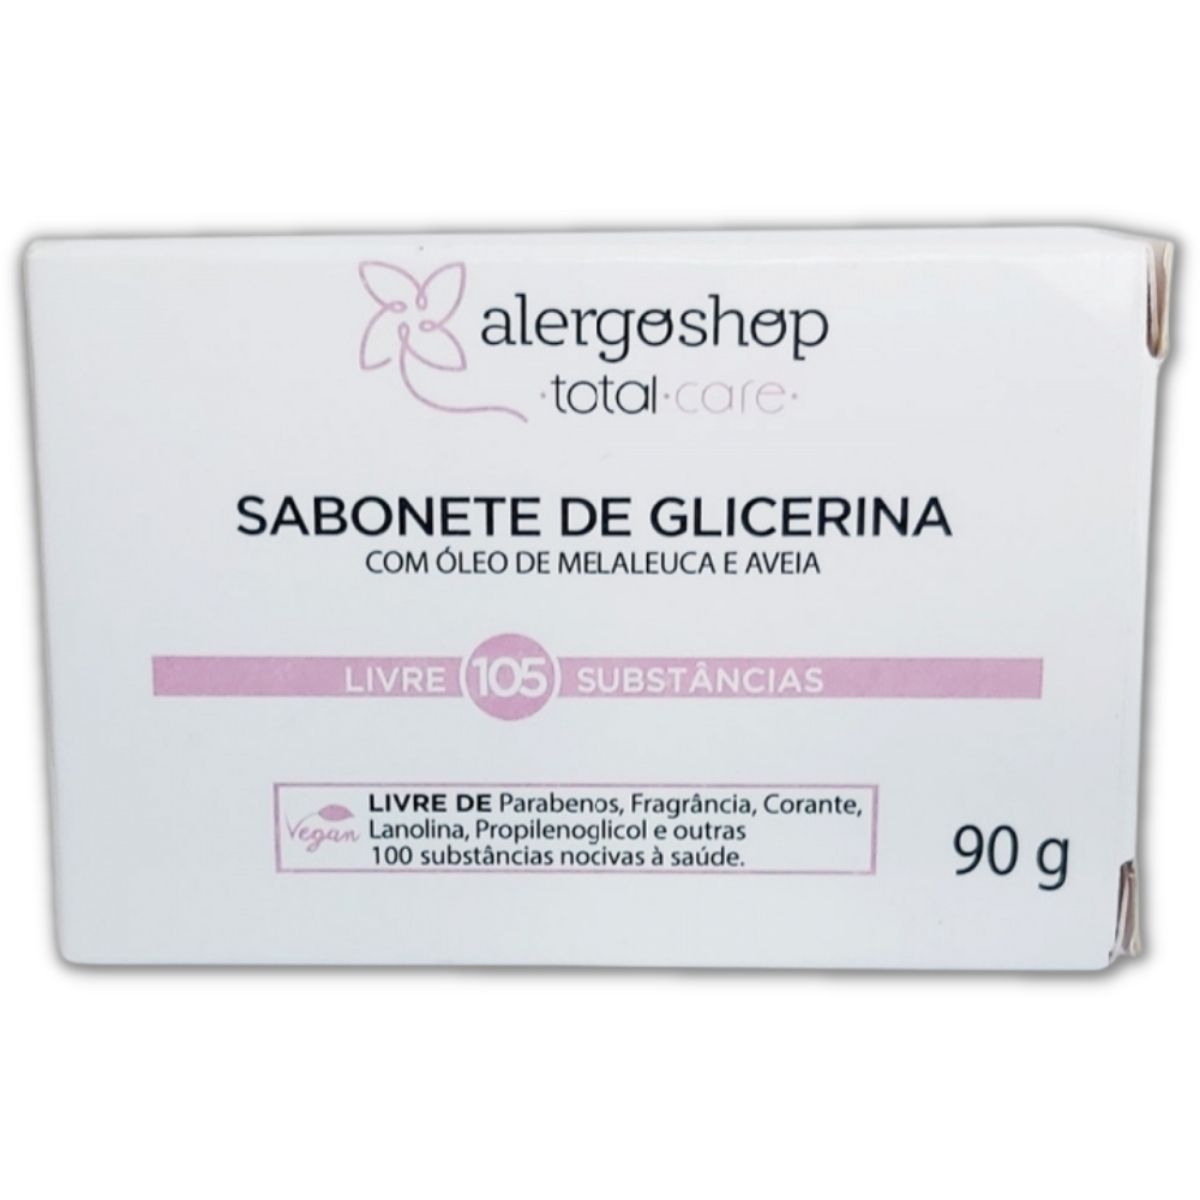 Sabonete de Glicerina com Óleo de Melaleuca e Aveia 90g Vegano - Alergoshop